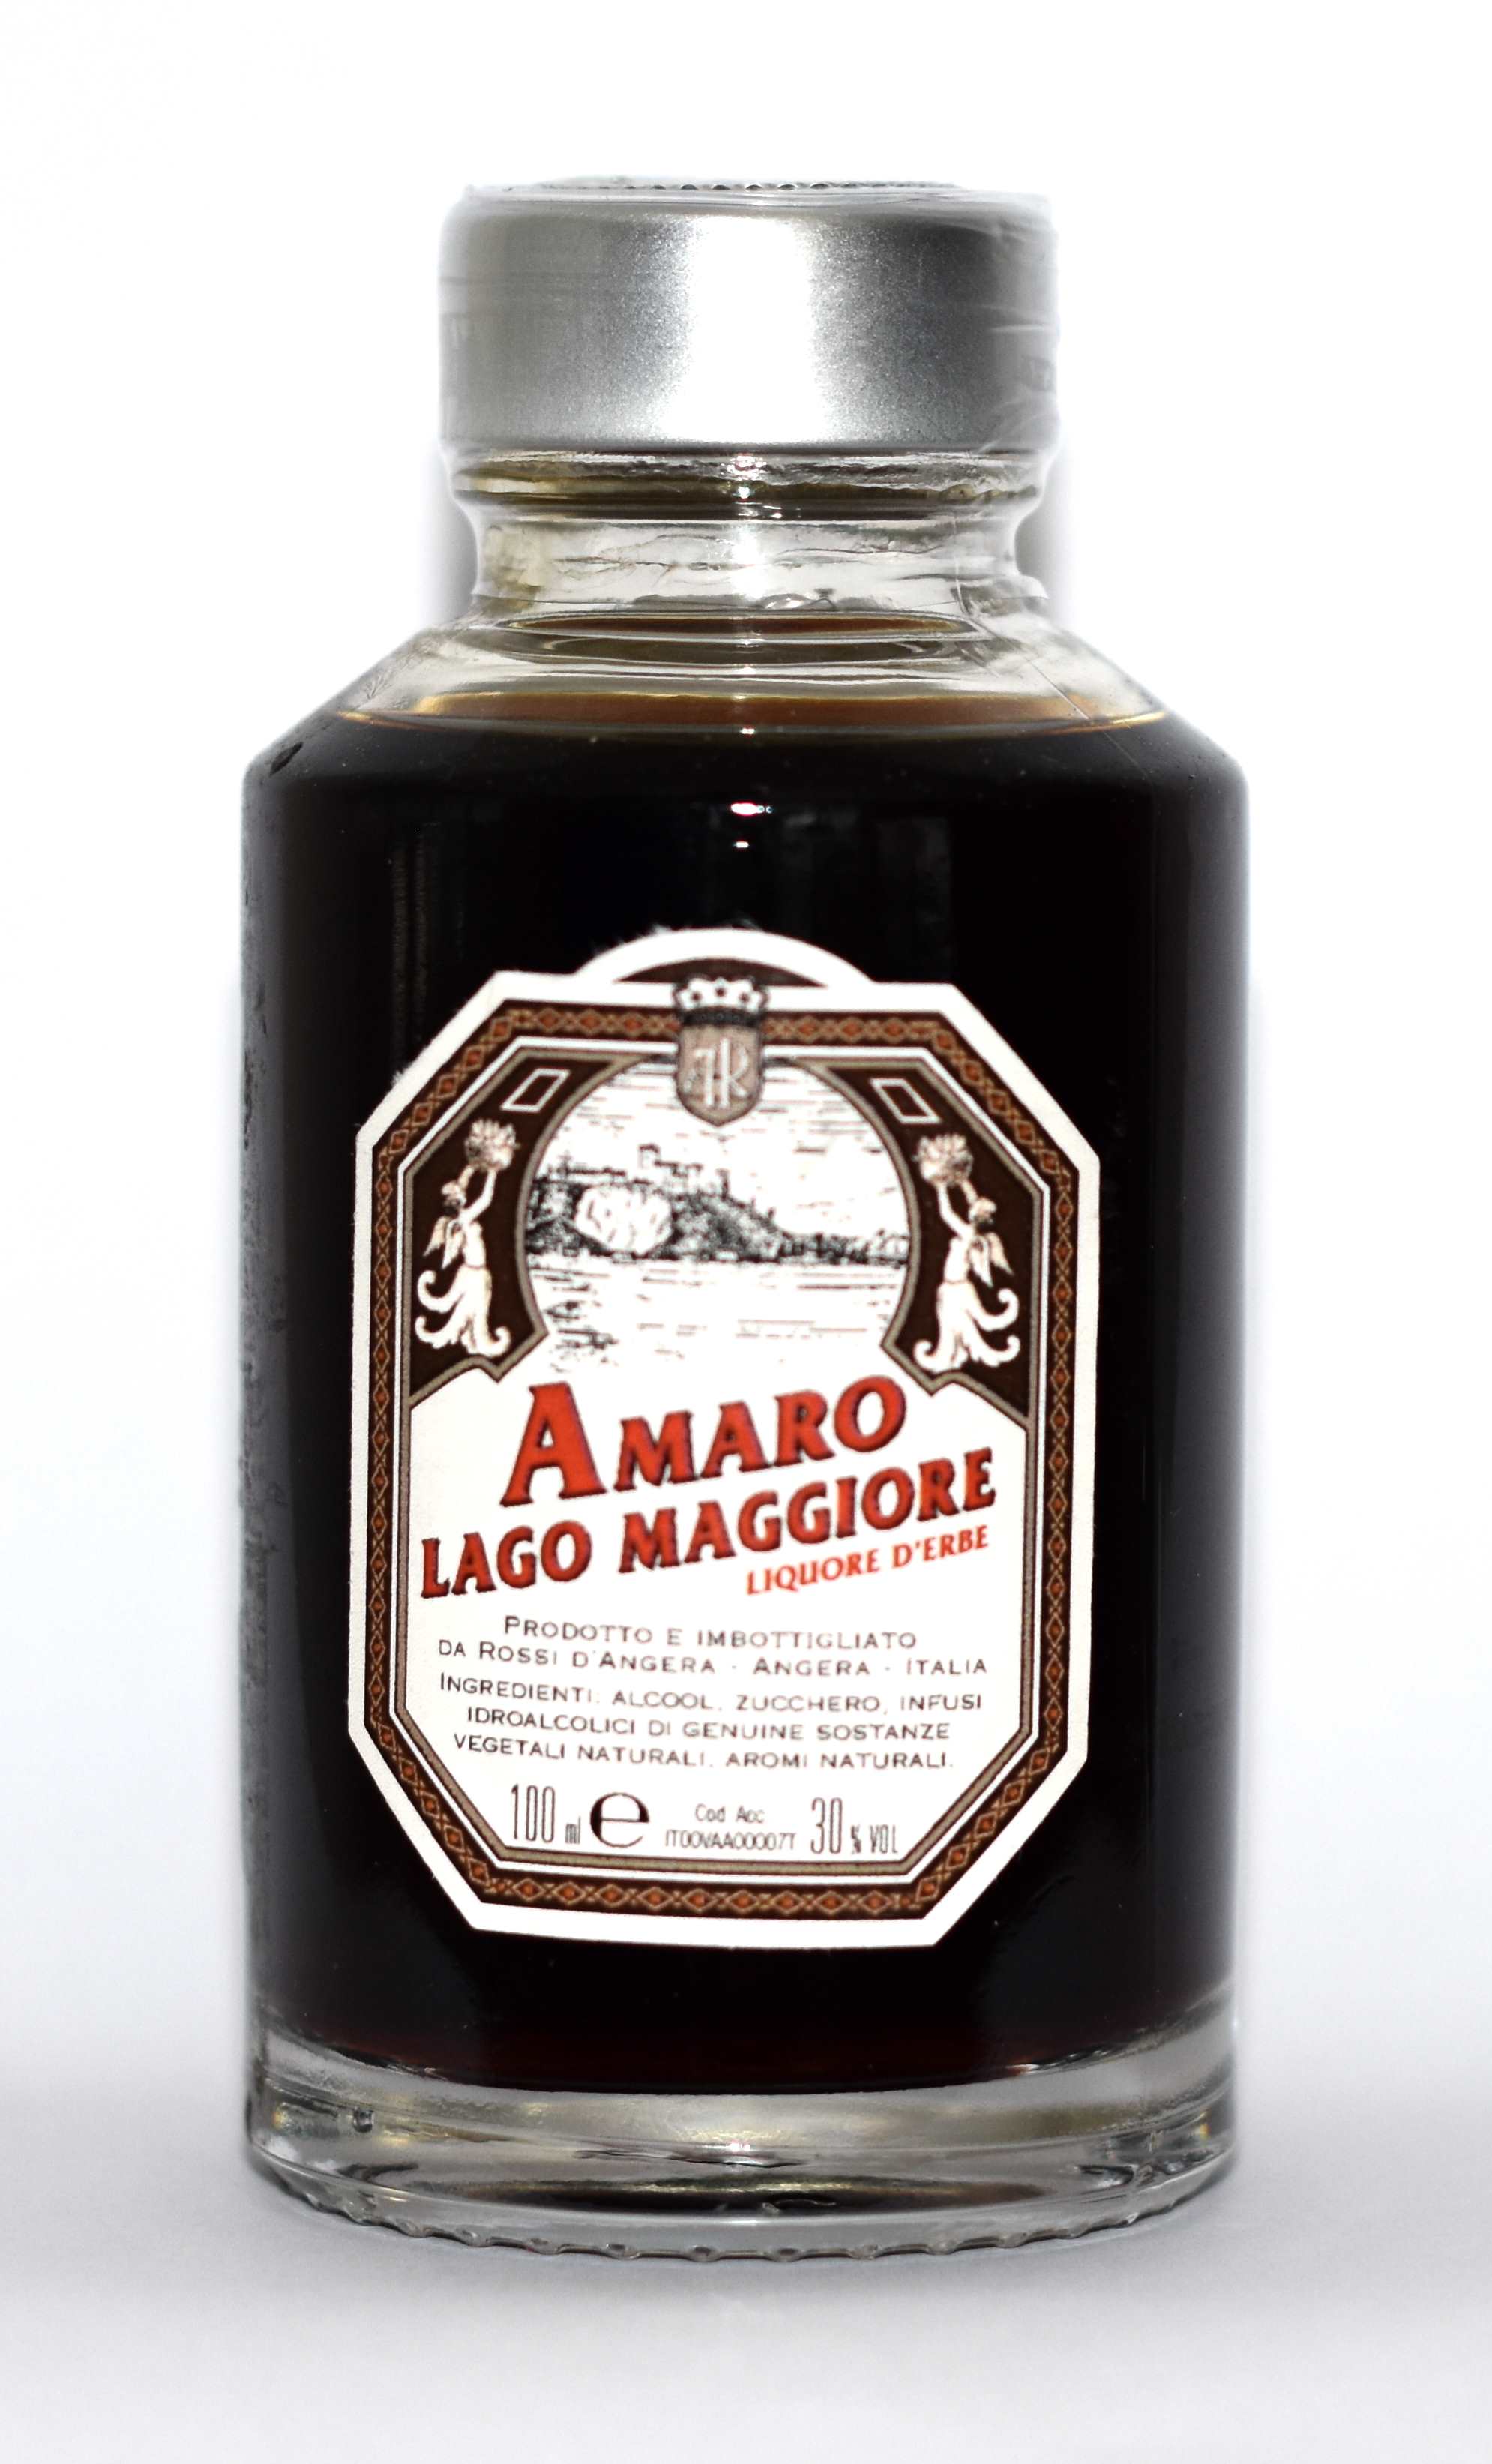 Amaro Lago Maggiore 30% Rossi d´Angera 0,1 l